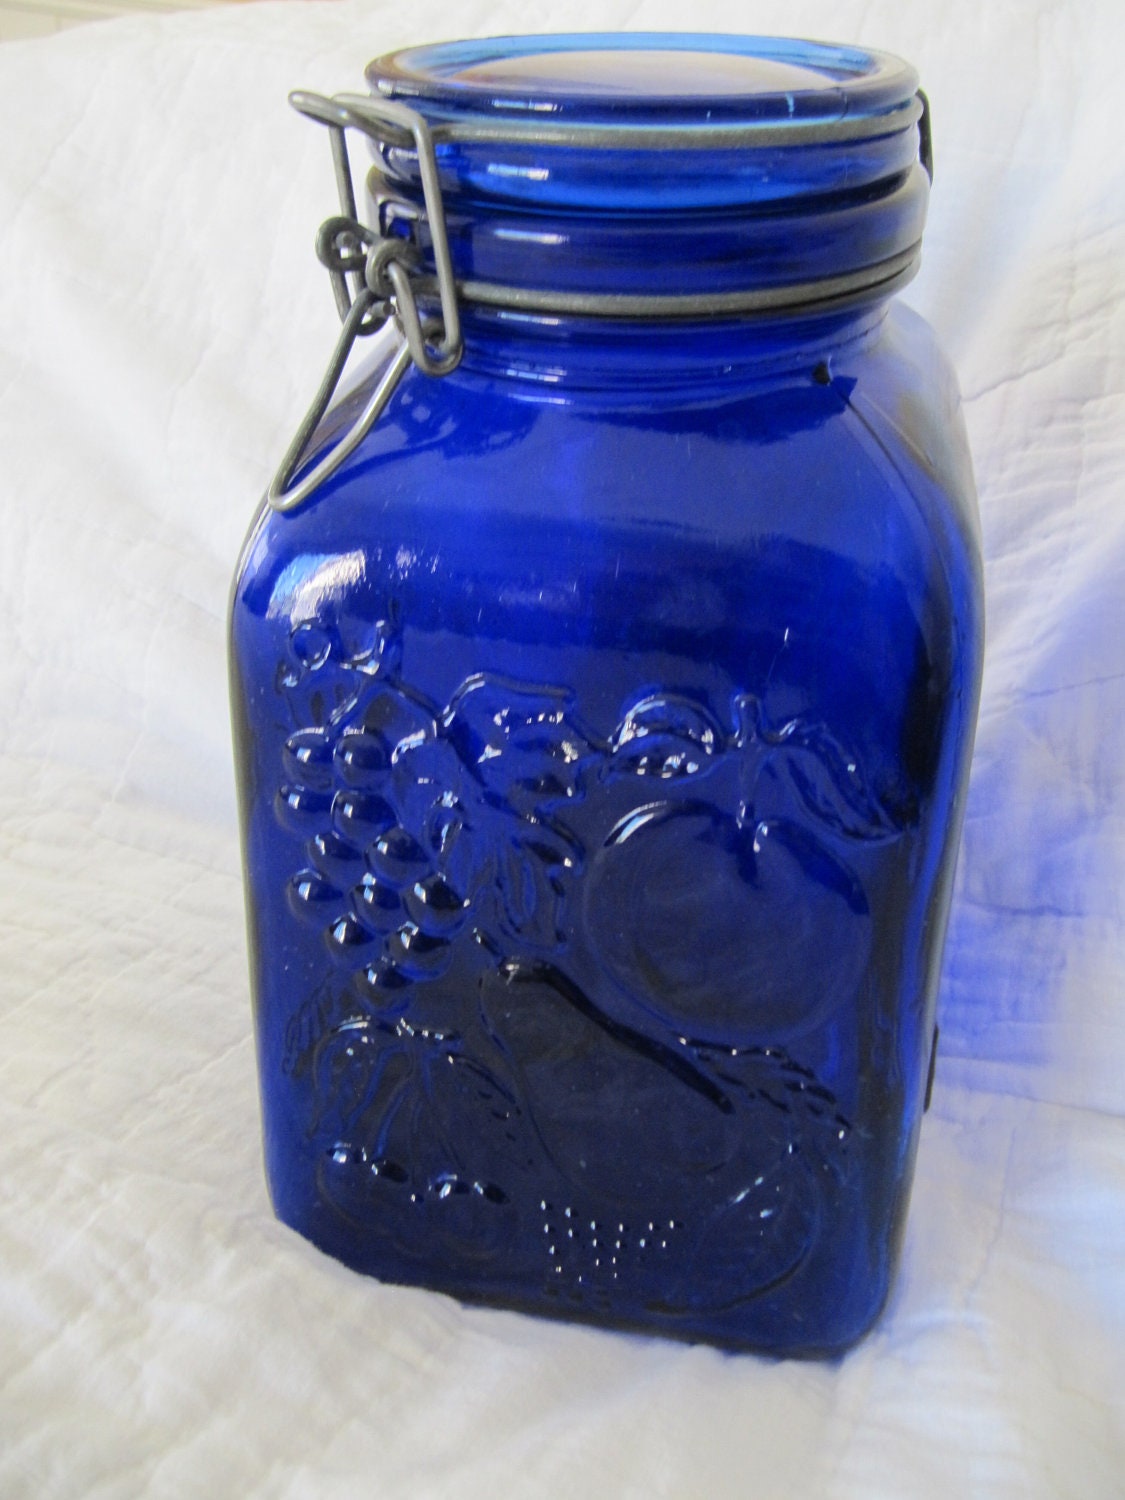 a jar contains 7 blue cubes 4 blue spheres